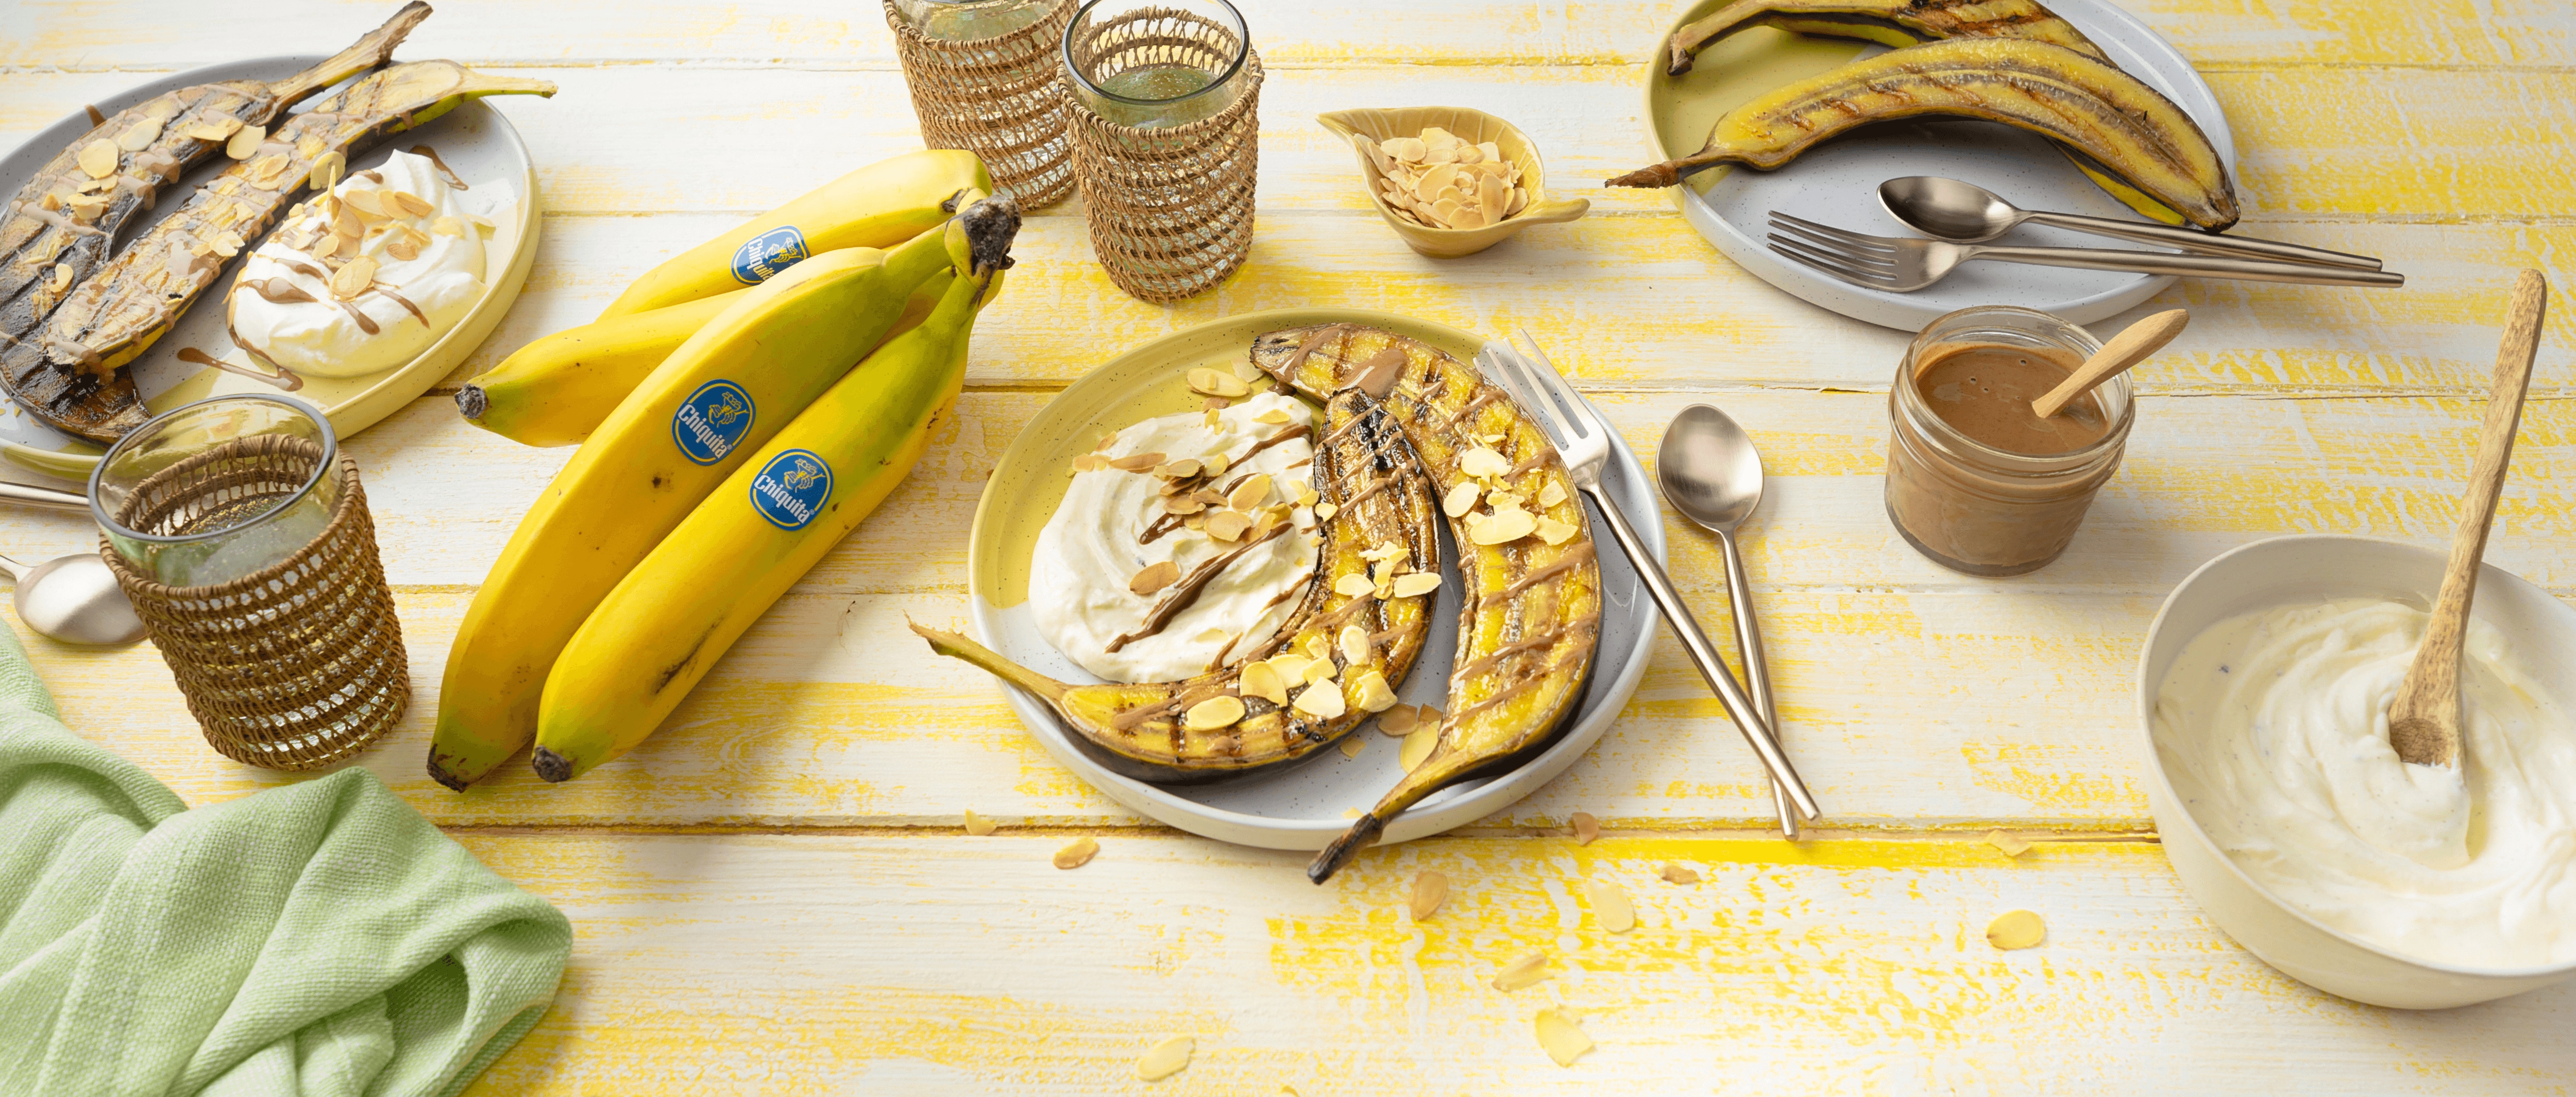 Gegrillte Chiquita Bananen mit Vanilleskyr und Mandeln